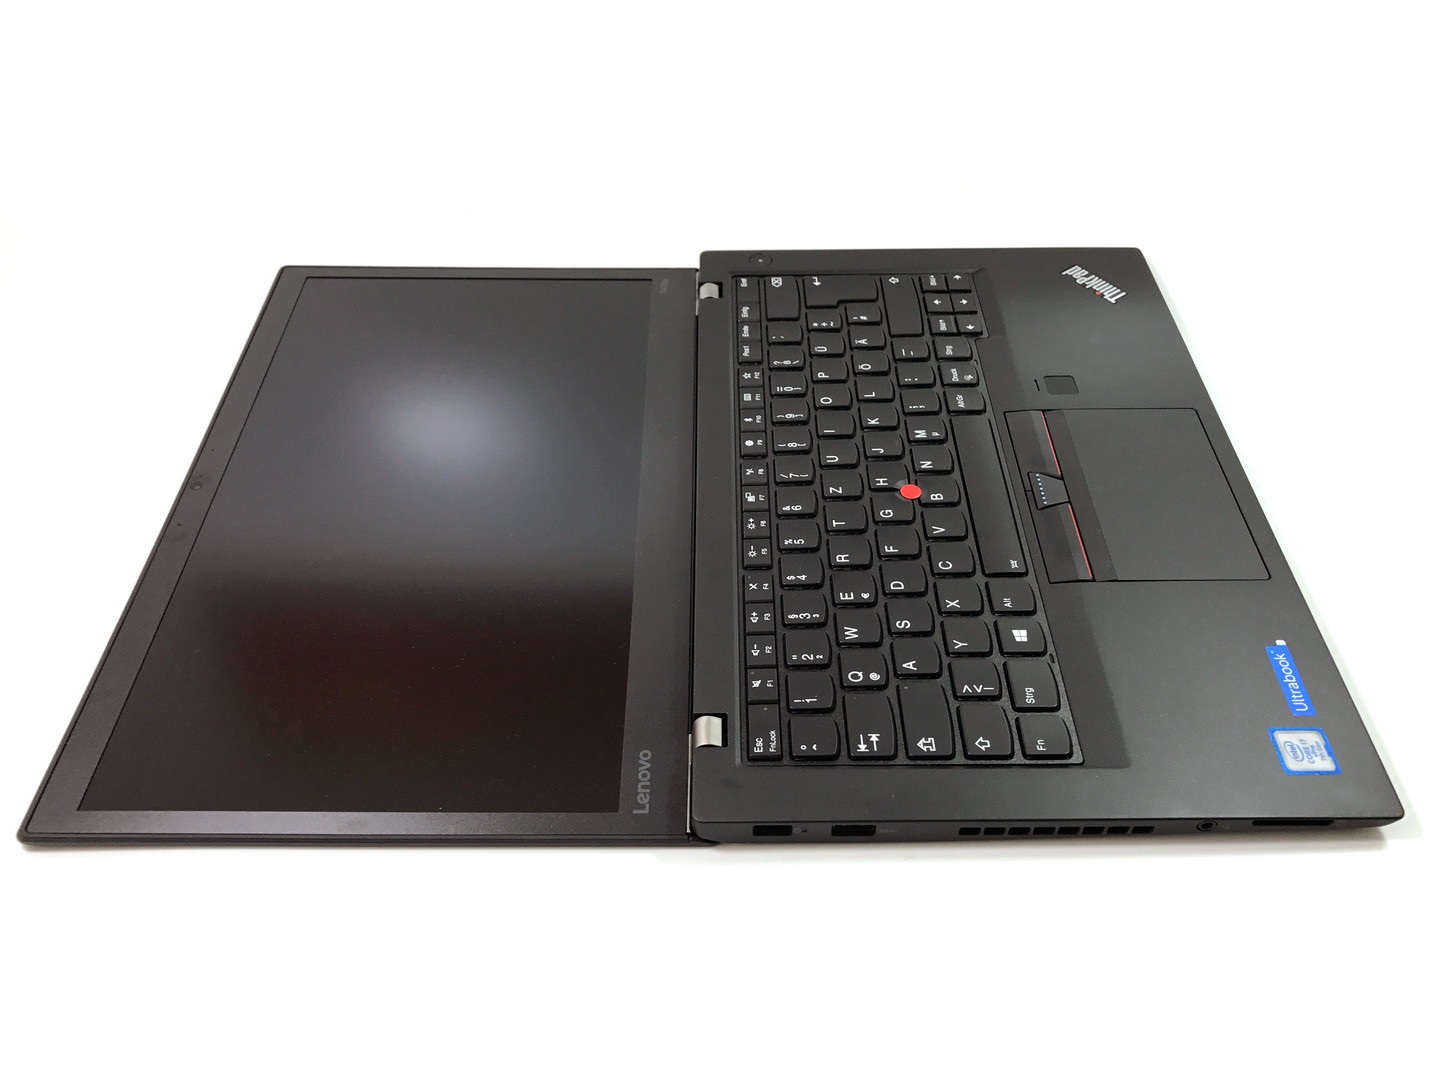 Đánh giá Laptop Lenovo ThinkPad T470s: Xách tay, hiệu năng tốt, Chuyên trang tư vấn Laptop